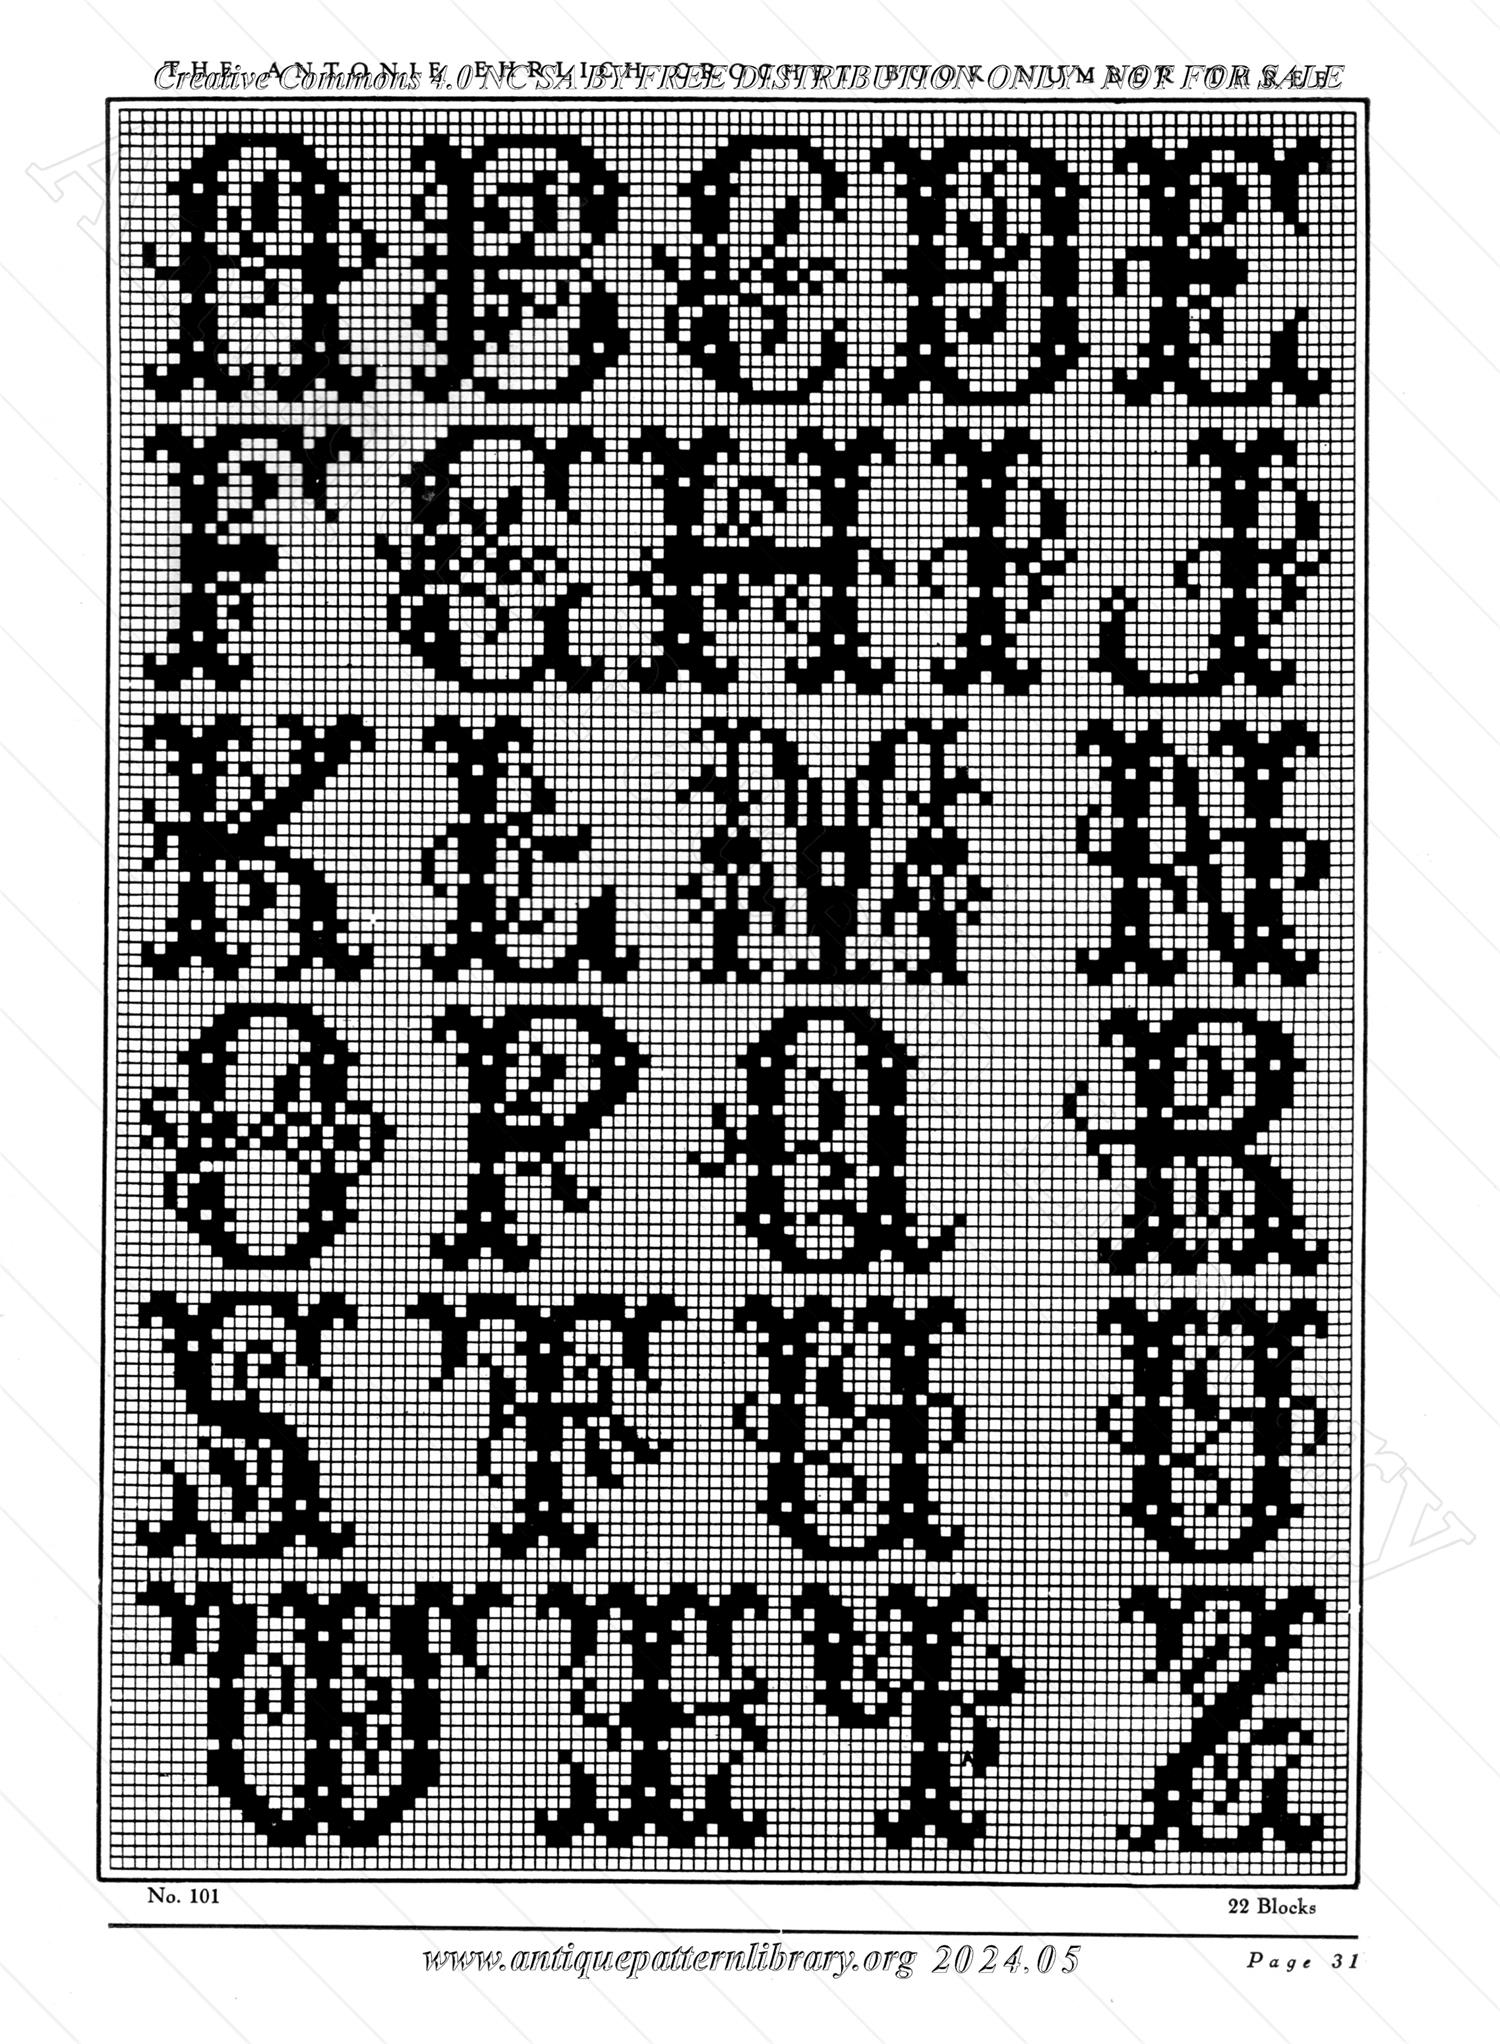 A-DC021 The Antonie Ehrlich Crochet Book No. 3: